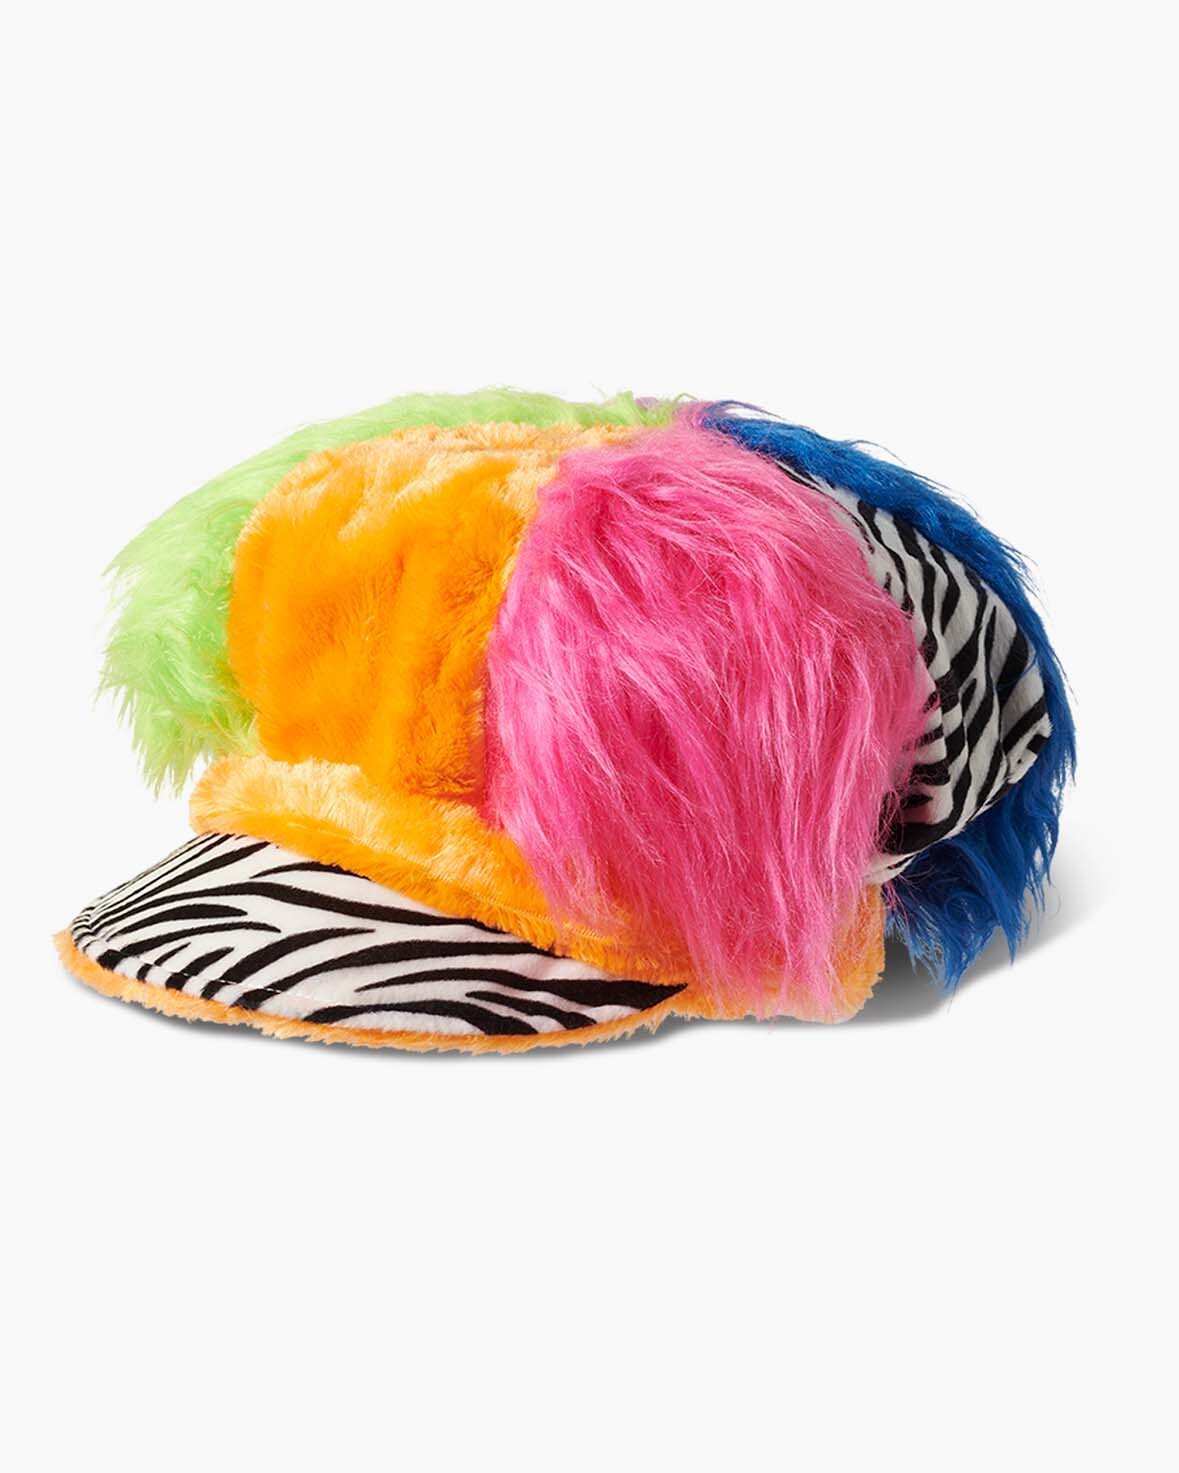 Insomniac Rainbow Pie Hat